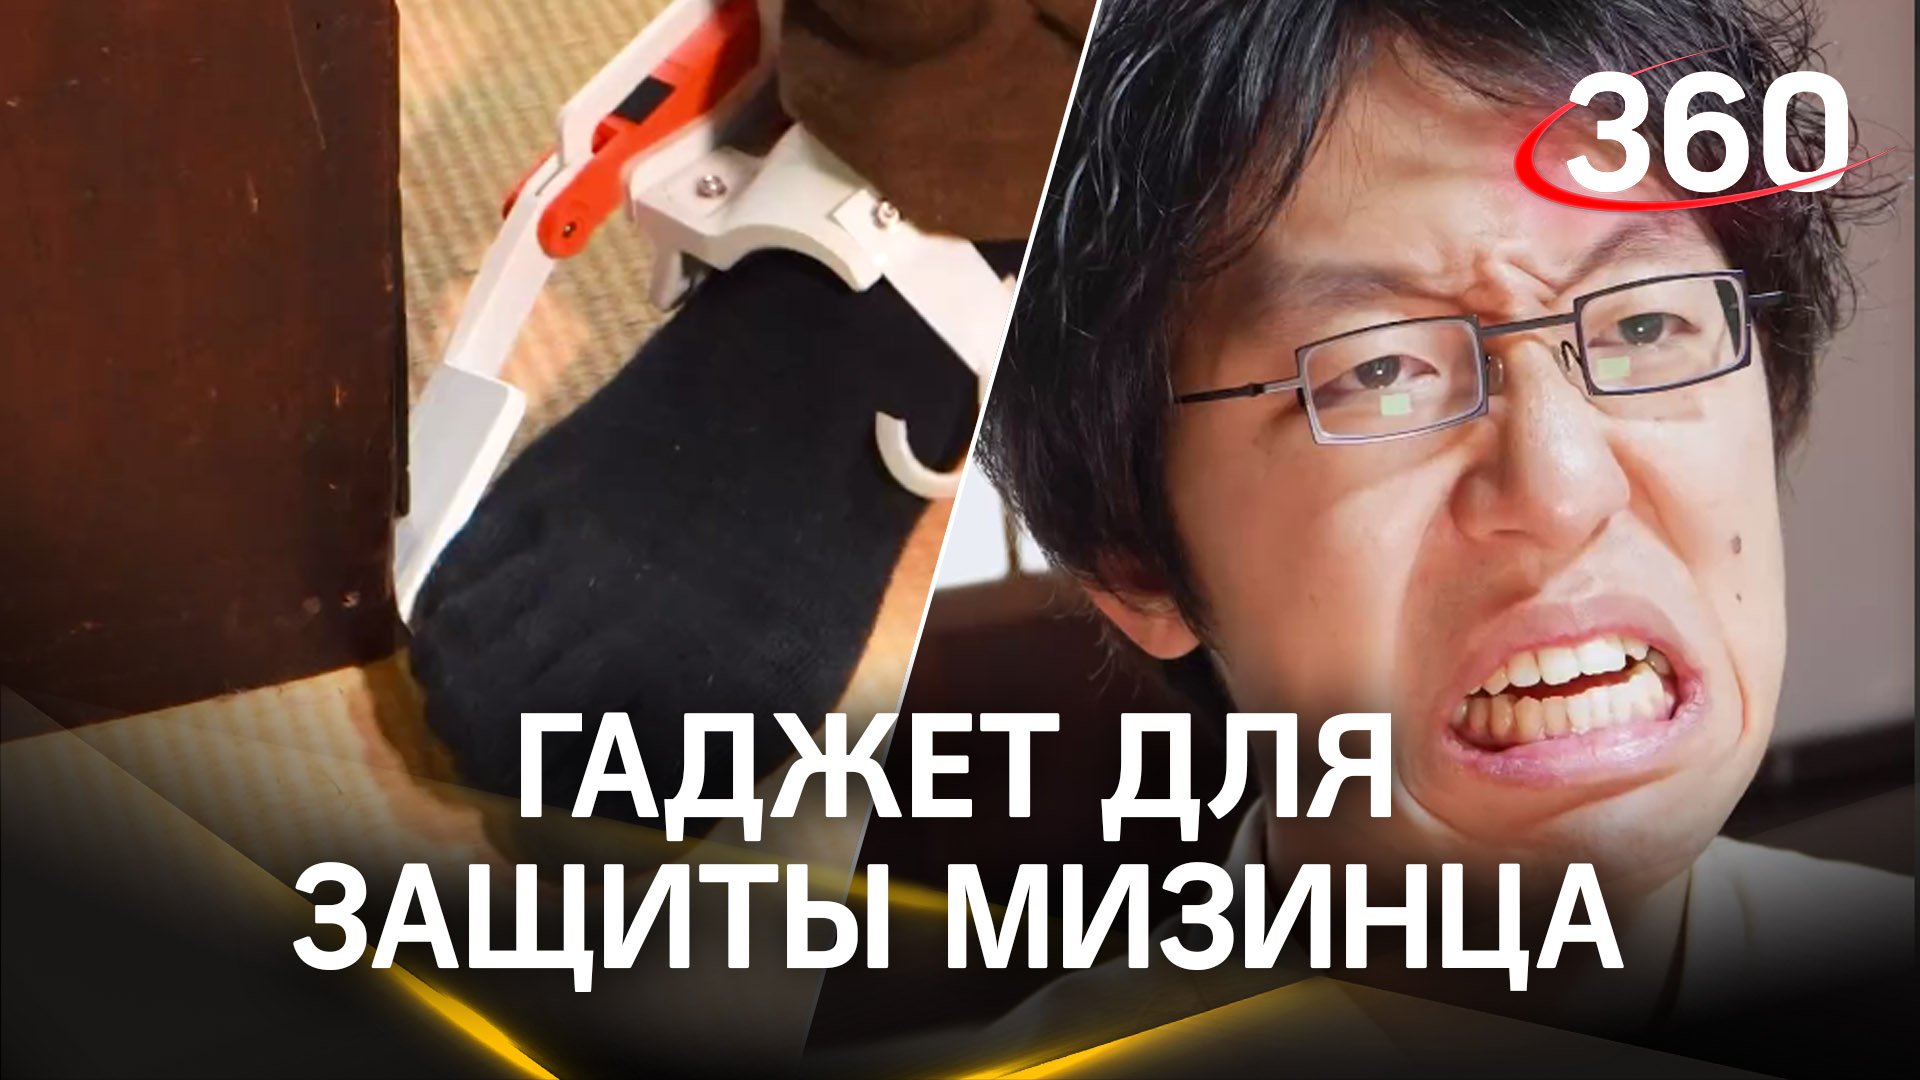 То, что нужно человечеству: японский инженер спас мизинцы от боли